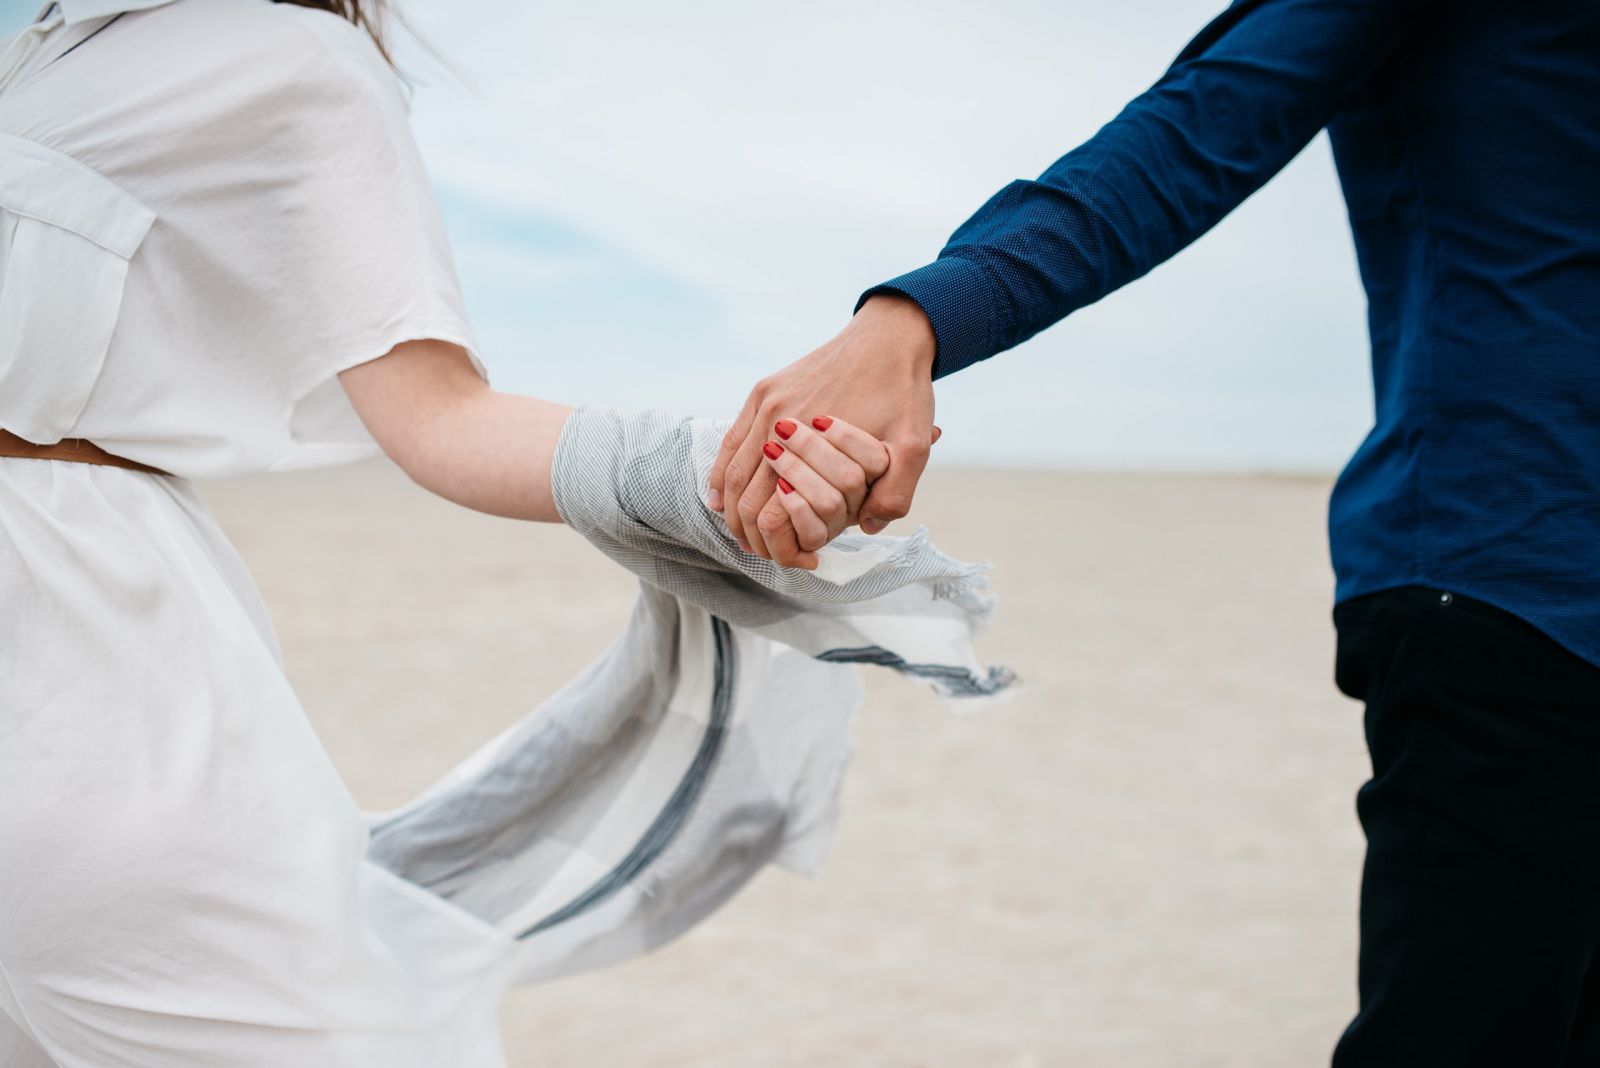 Homem e mulher correndo juntos com suas mãos dadas em uma praia